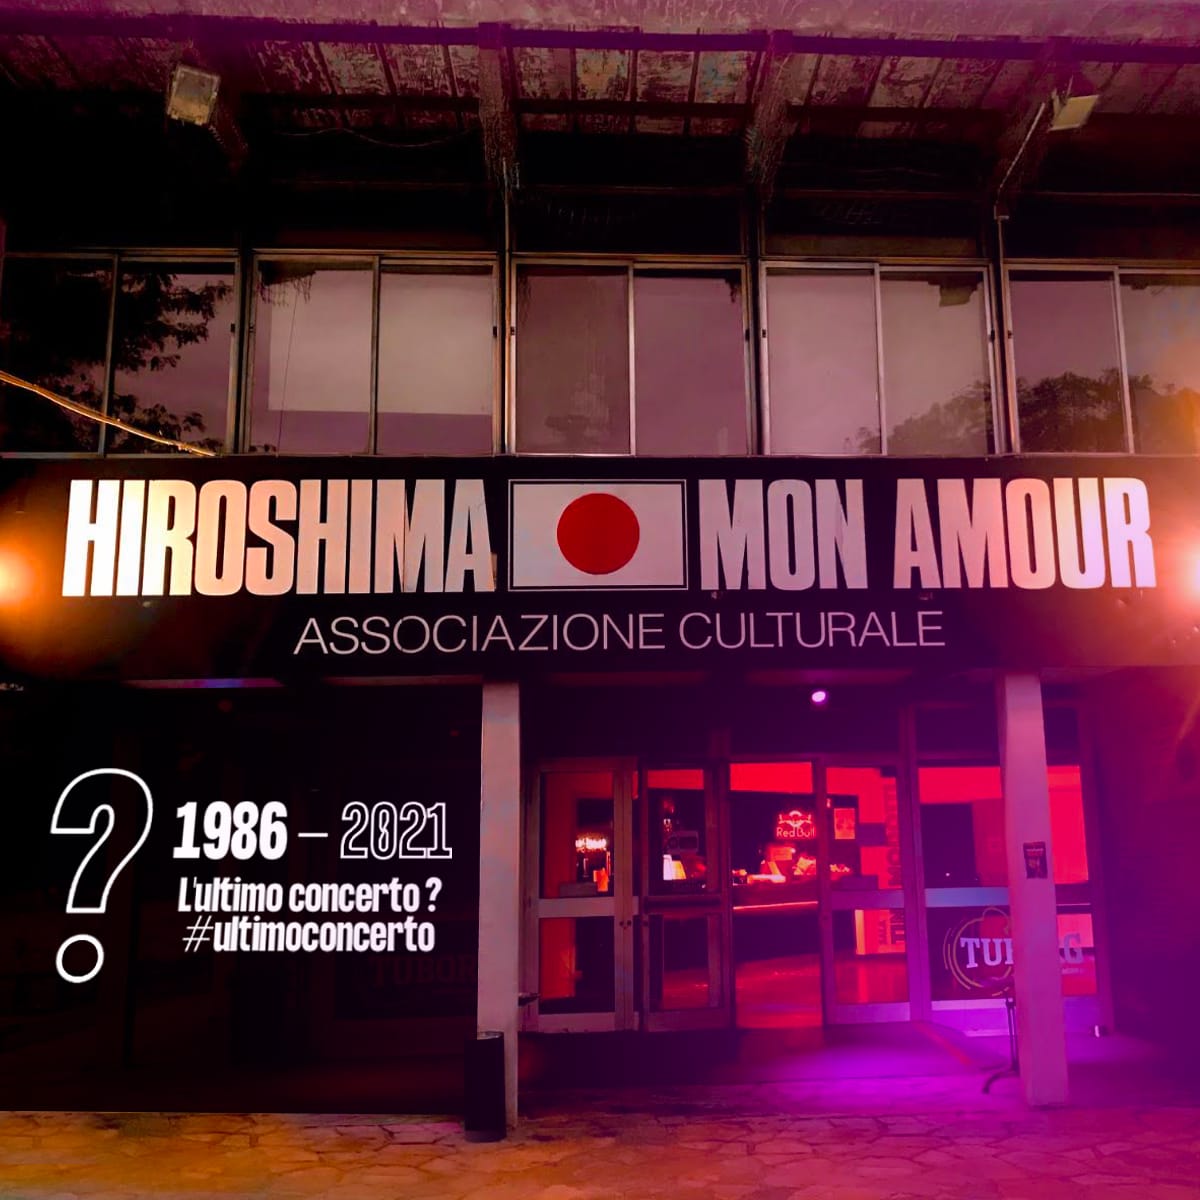 Hiroshima Mon Amour - L'Ultimo Concerto? #ultimoconcerto